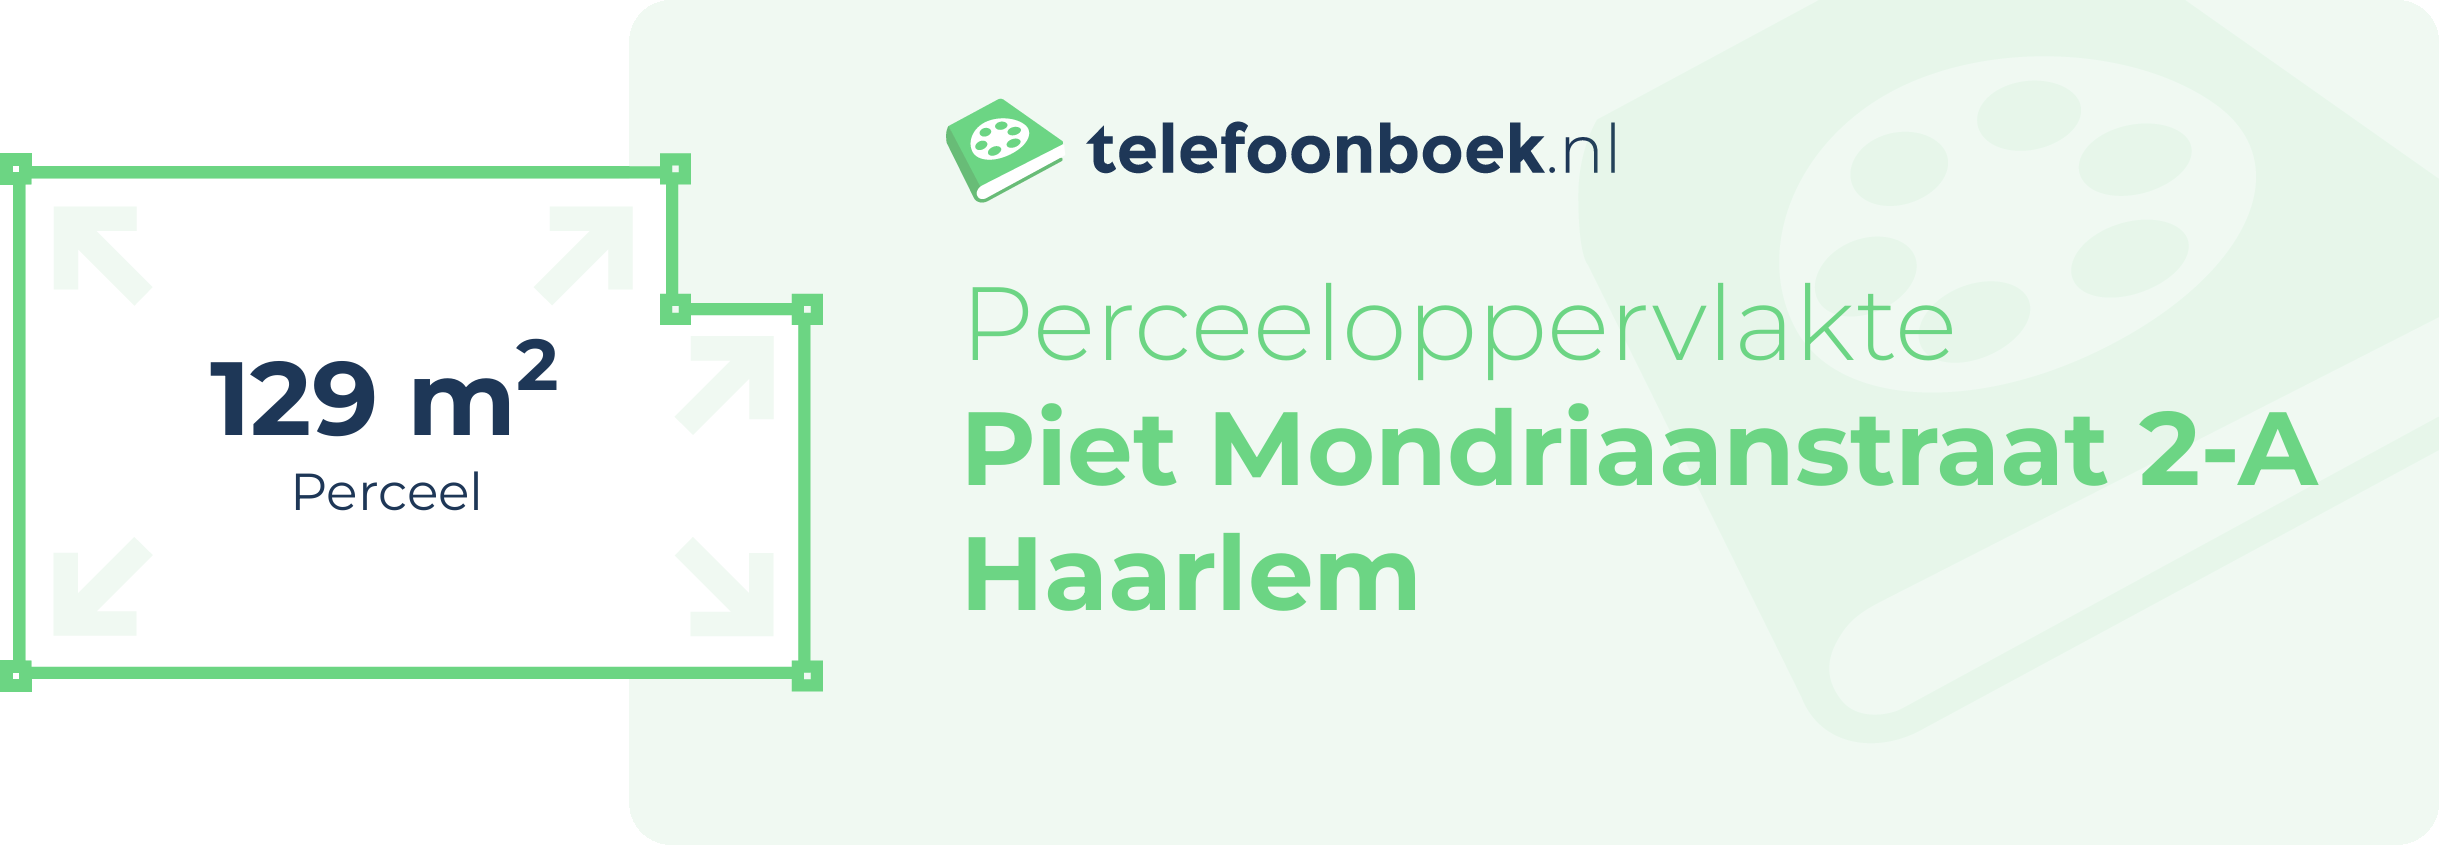 Perceeloppervlakte Piet Mondriaanstraat 2-A Haarlem